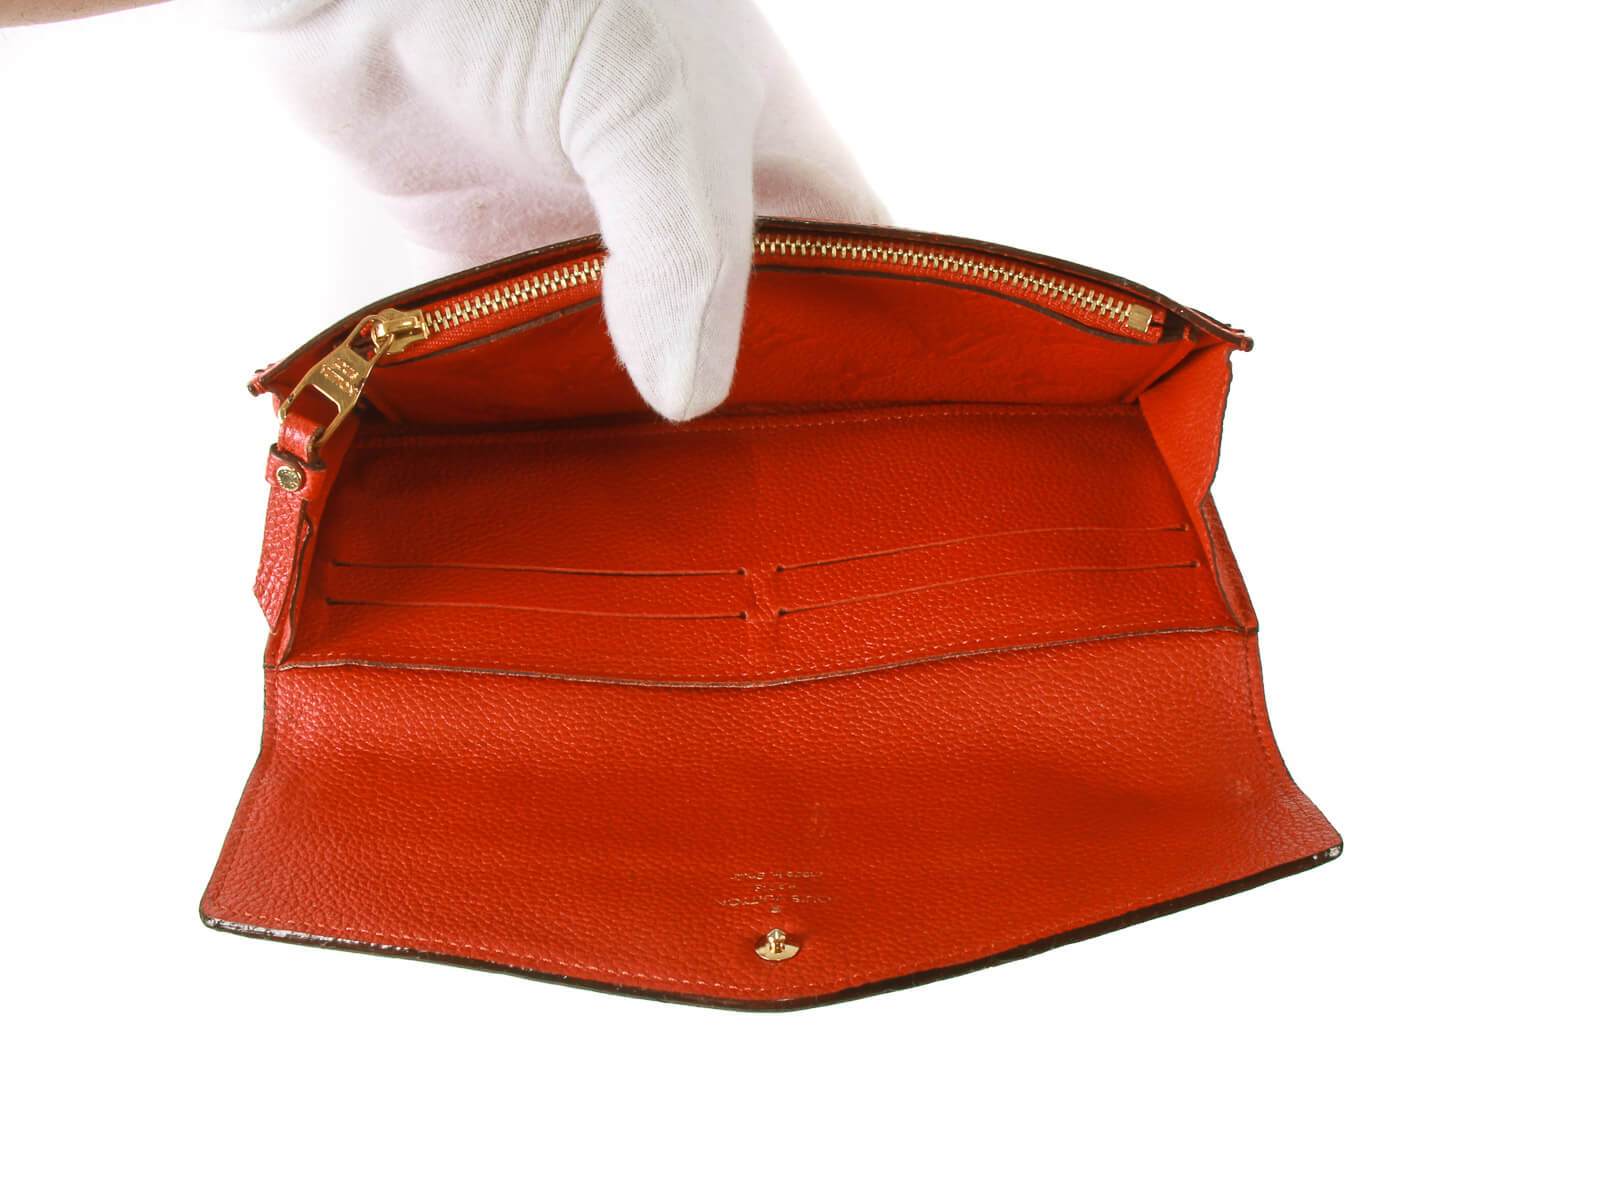 Zoé Wallet Monogram Empreinte Leather - Women - Small Leather